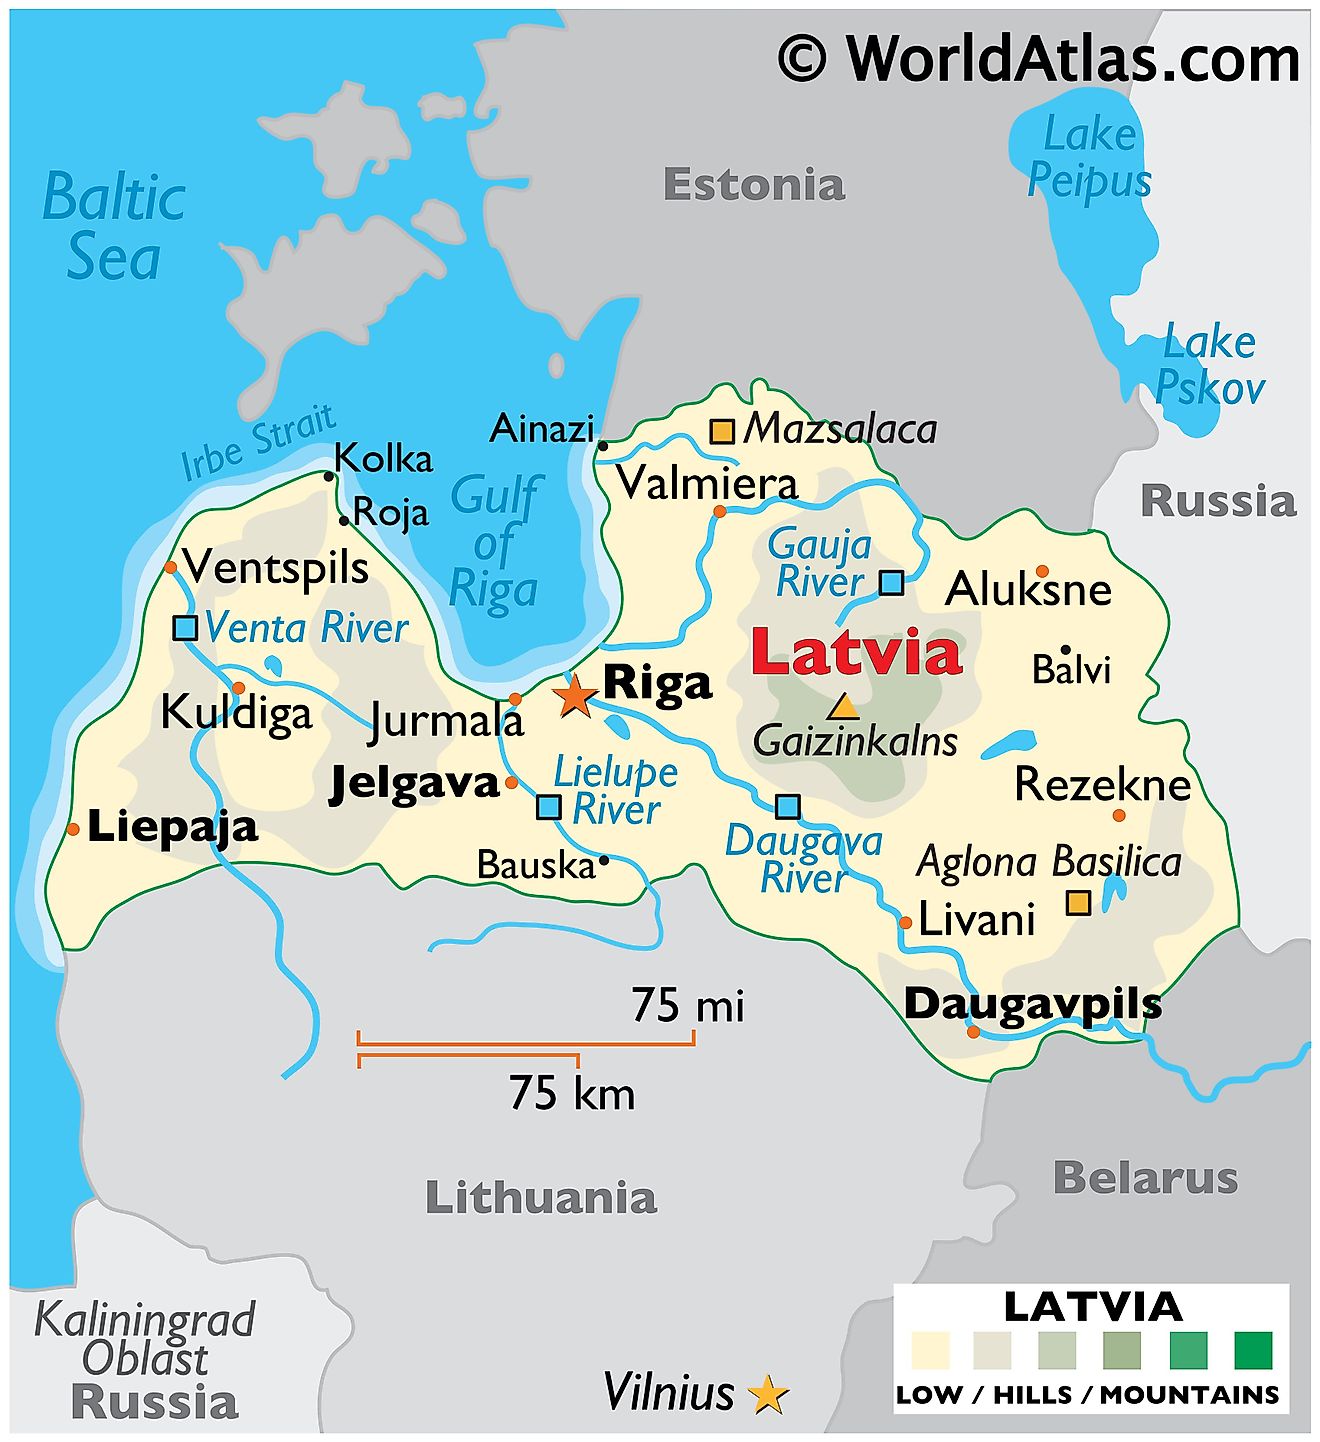 Mapa físico de Letonia que muestra el terreno, los ríos principales, las ciudades importantes, las fronteras internacionales, etc.